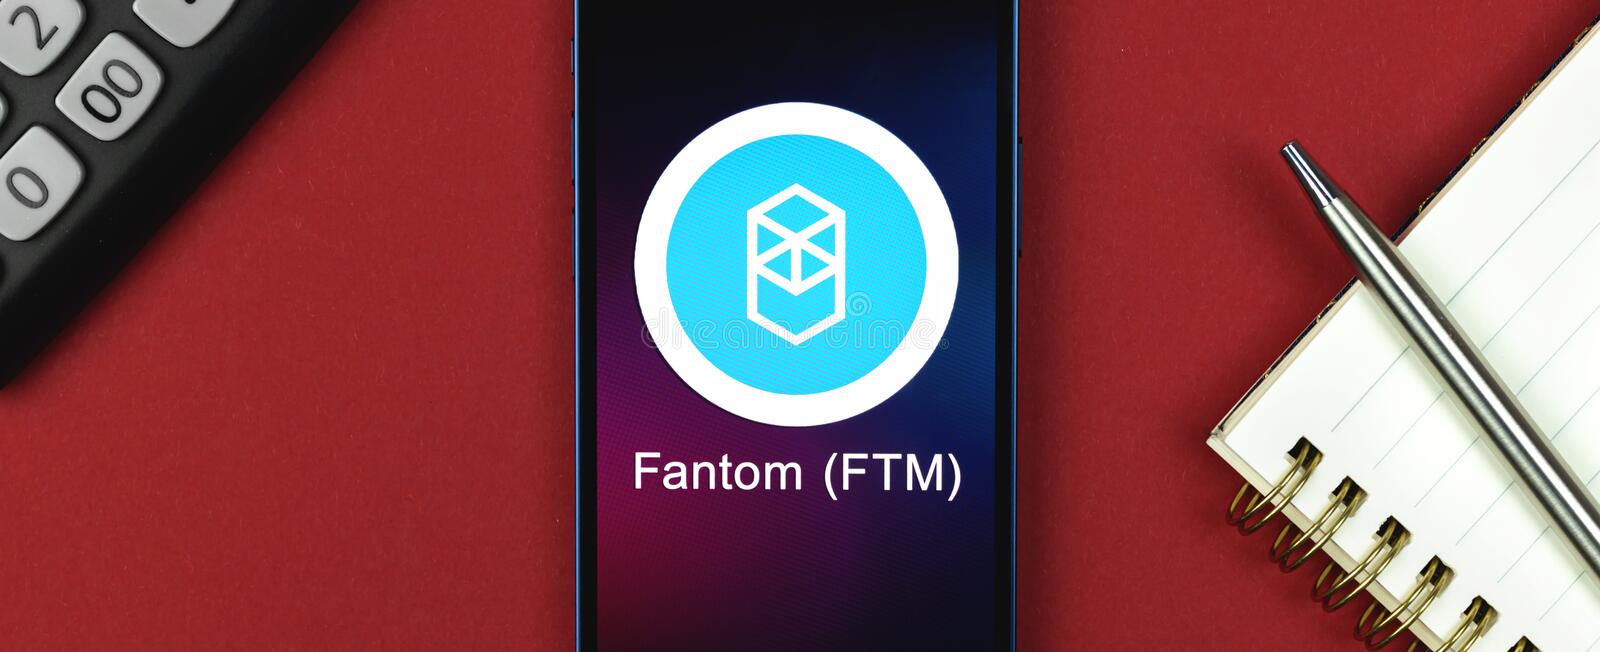 How to stake Fantom (FTM)?